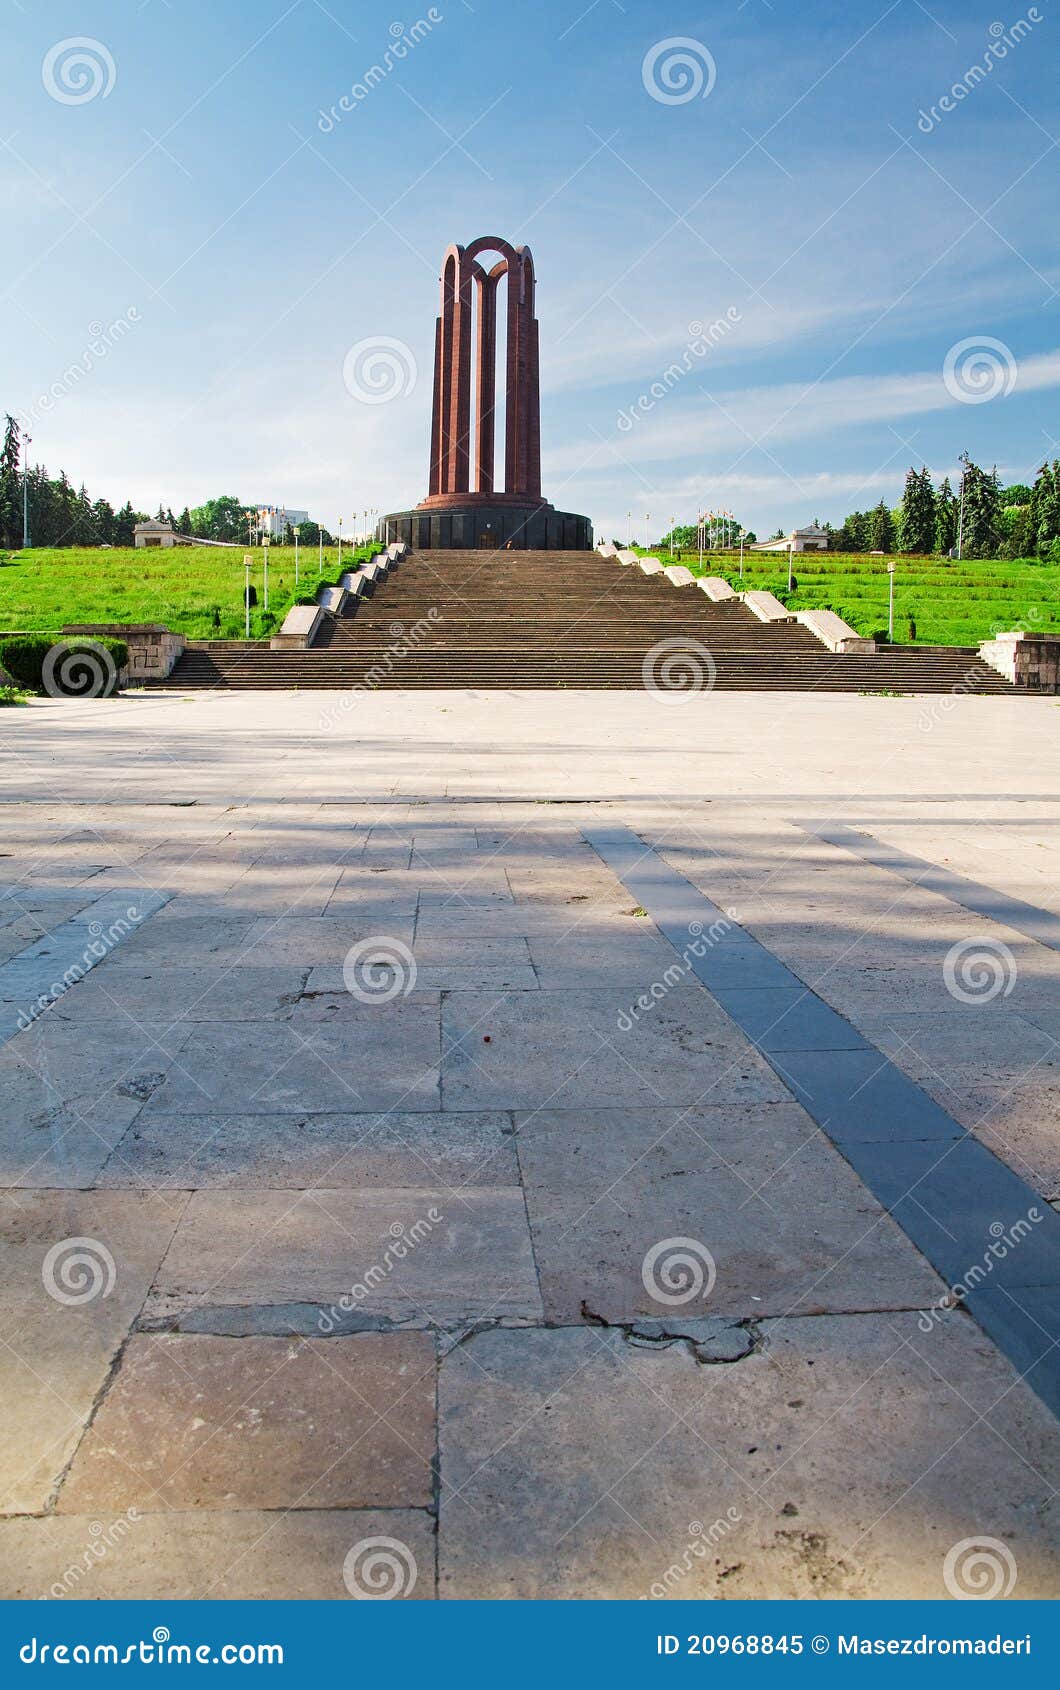 bucharest - communist mausoleum